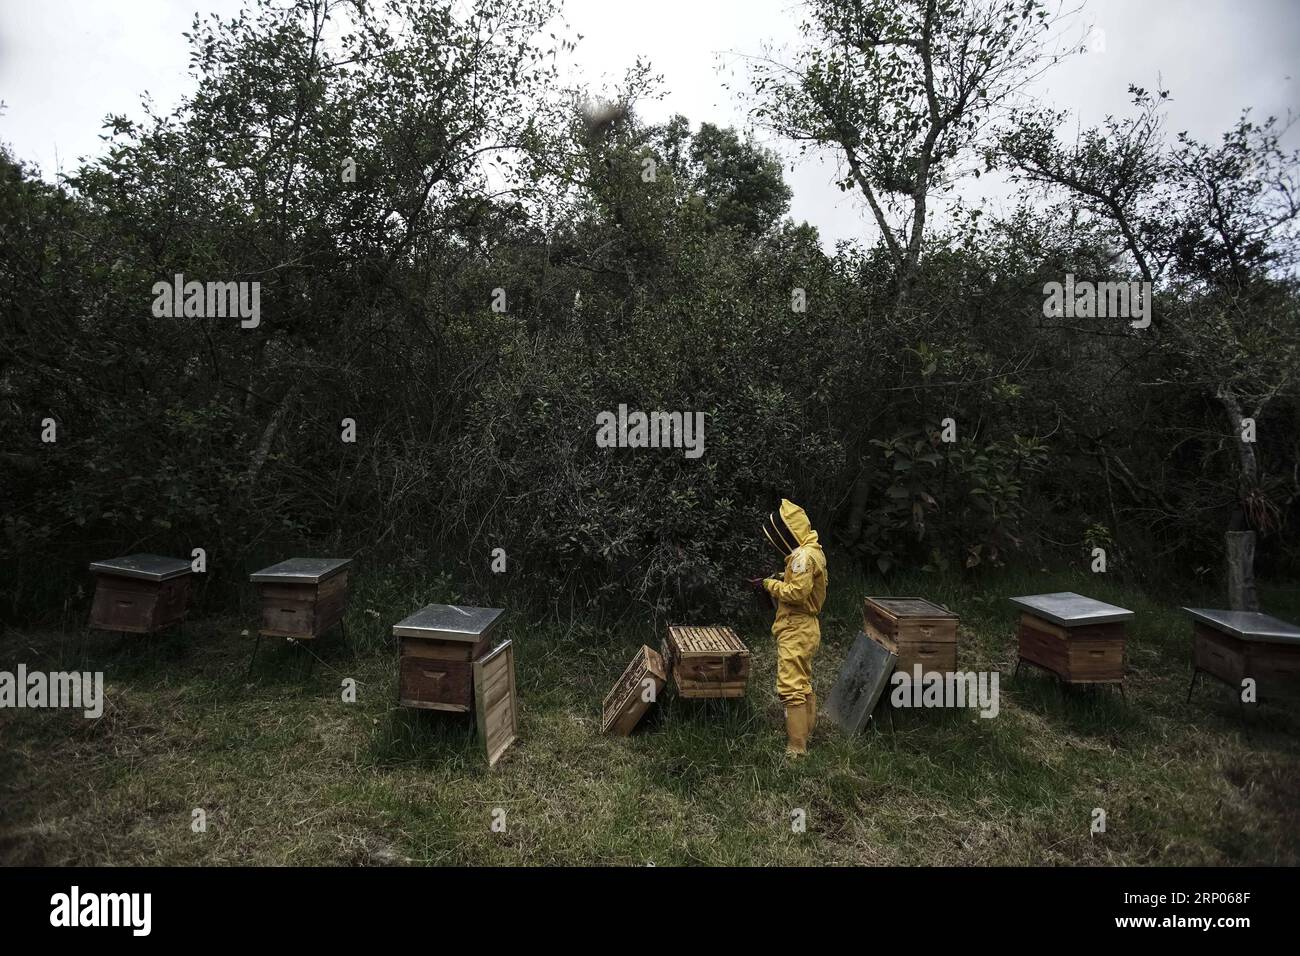 (180422) -- GUASCA, le 22 avril 2018 -- l'apiculteur Fabio Ruiz travaille dans la réserve naturelle Montiel de Guasca en Colombie, le 18 avril 2018. L'apiculteur Fabio Ruiz a souligné la réduction du nombre d'abeilles dans le monde, appelant à une culture de l'apiculture urbaine. (cr) (vf) COLOMBIE-GUASCA-APICULTURE-JOUR DE LA TERRE JHONxPAZ PUBLICATIONxNOTxINxCHN Banque D'Images